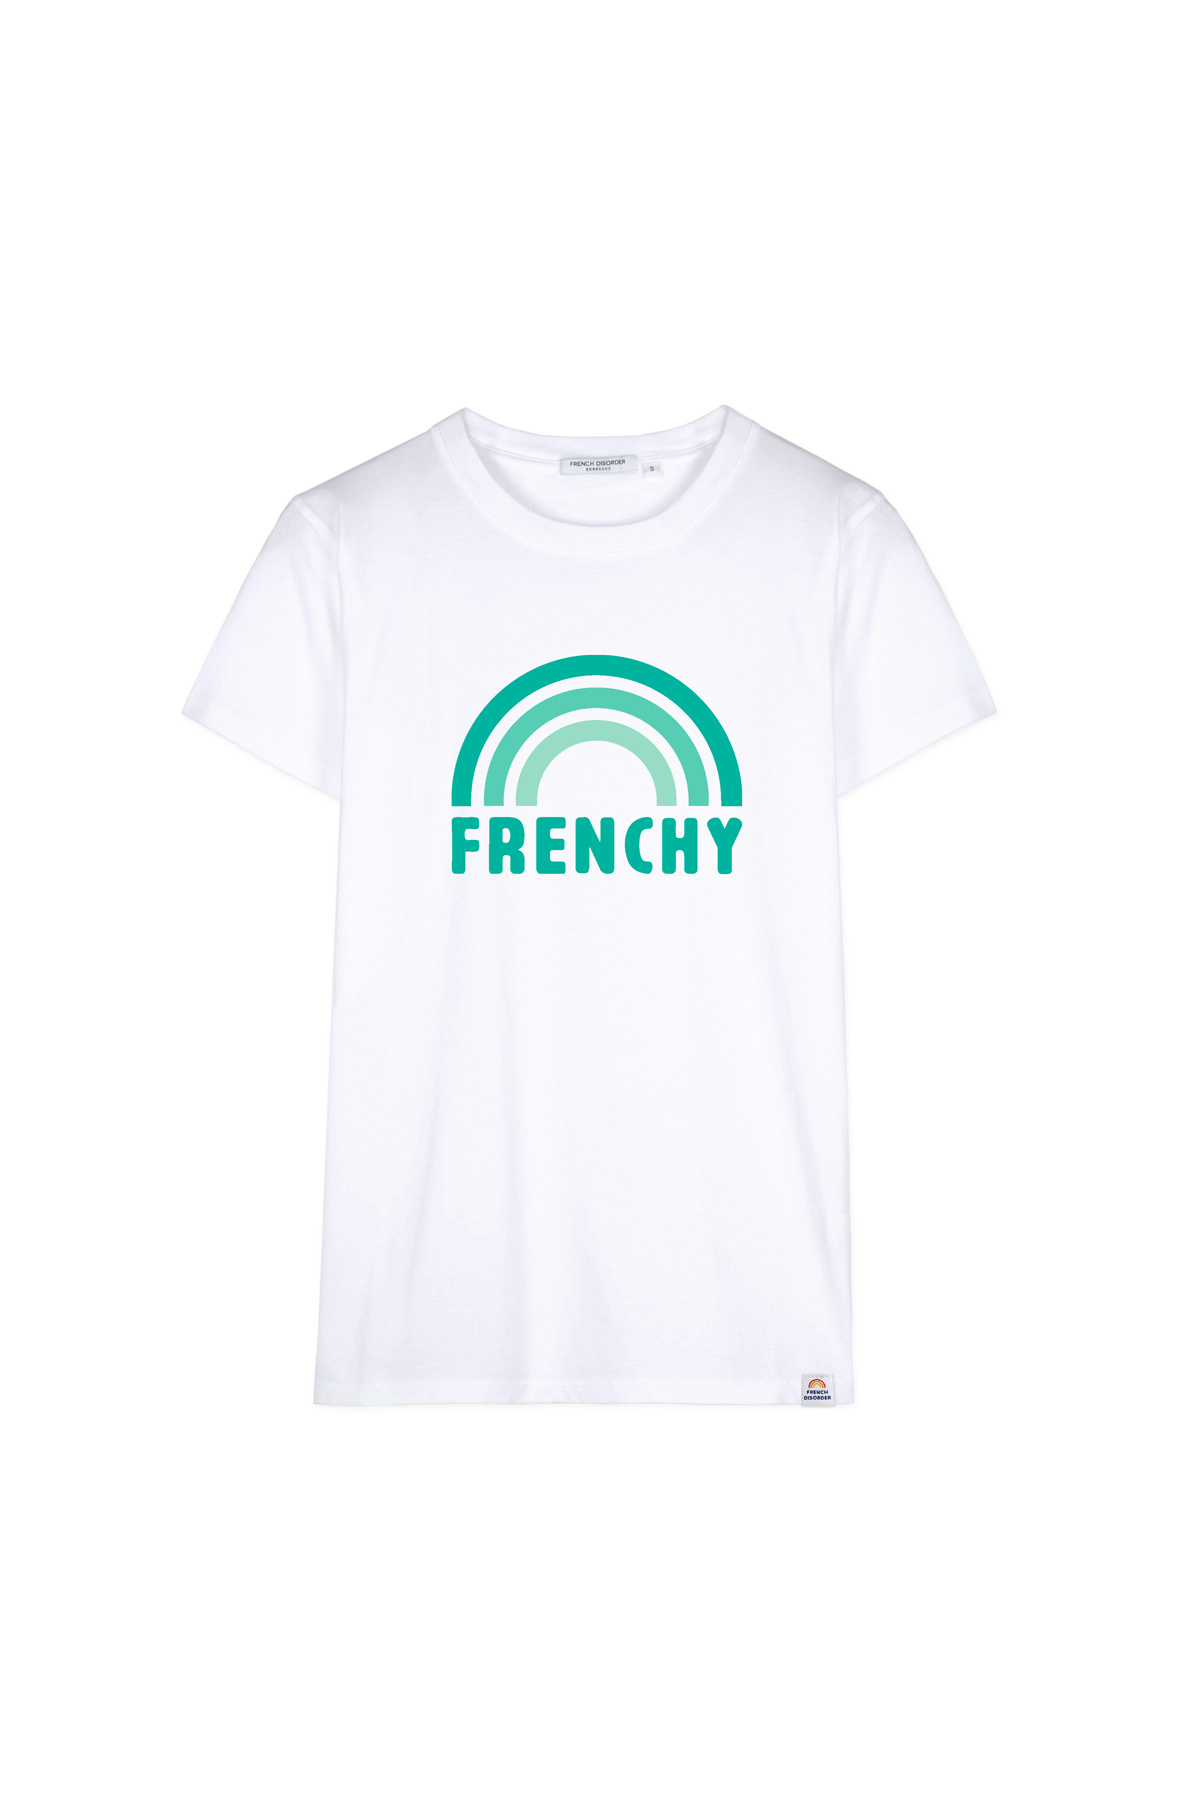 Tshirt FRENCHY